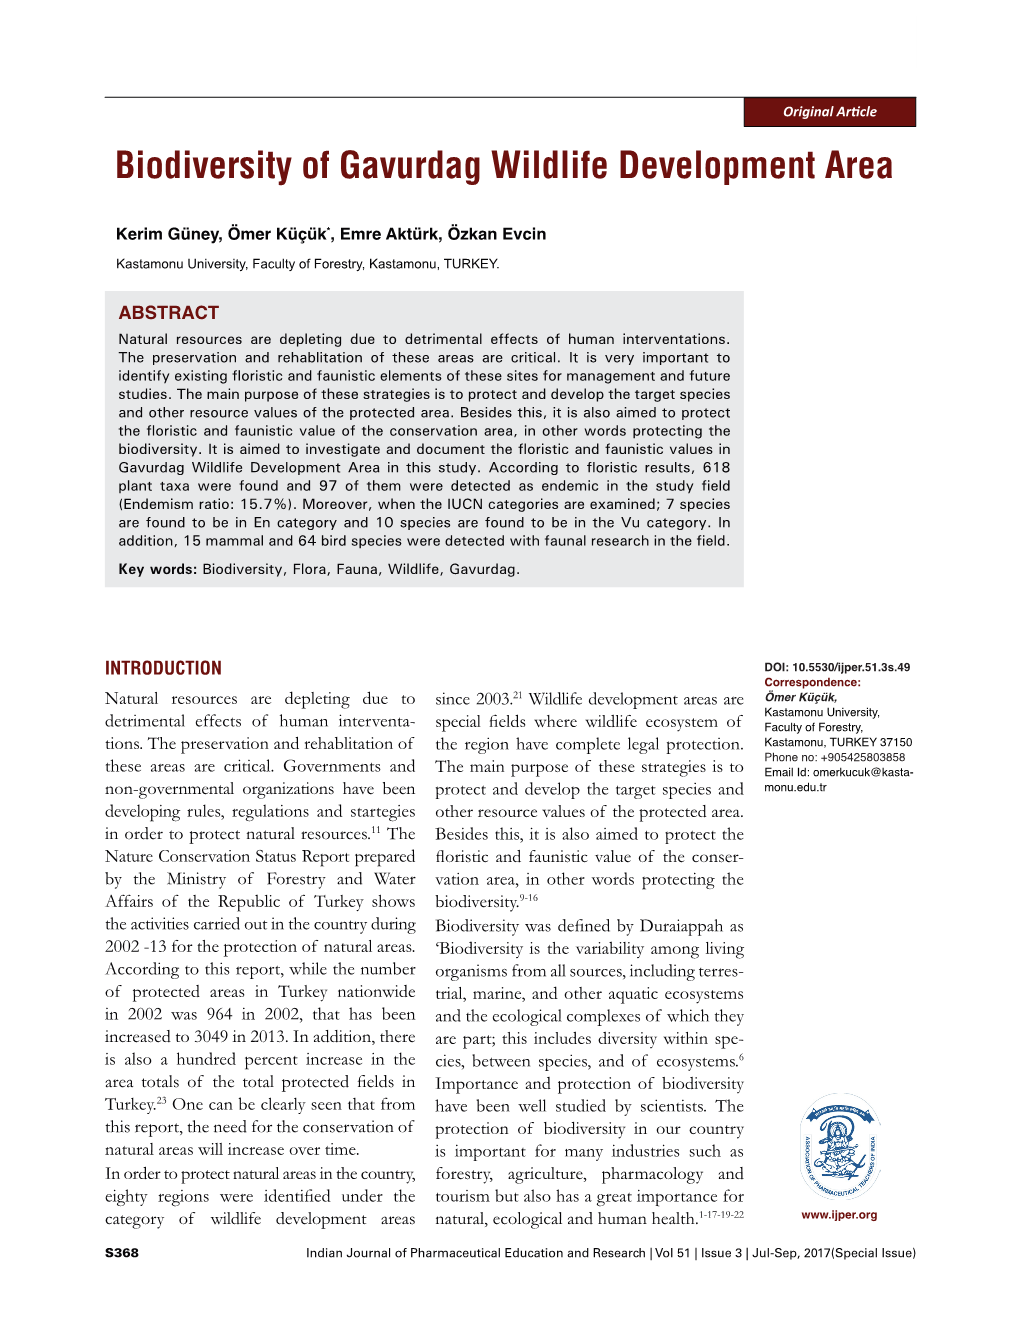 Biodiversity of Gavurdag Wildlife Development Area